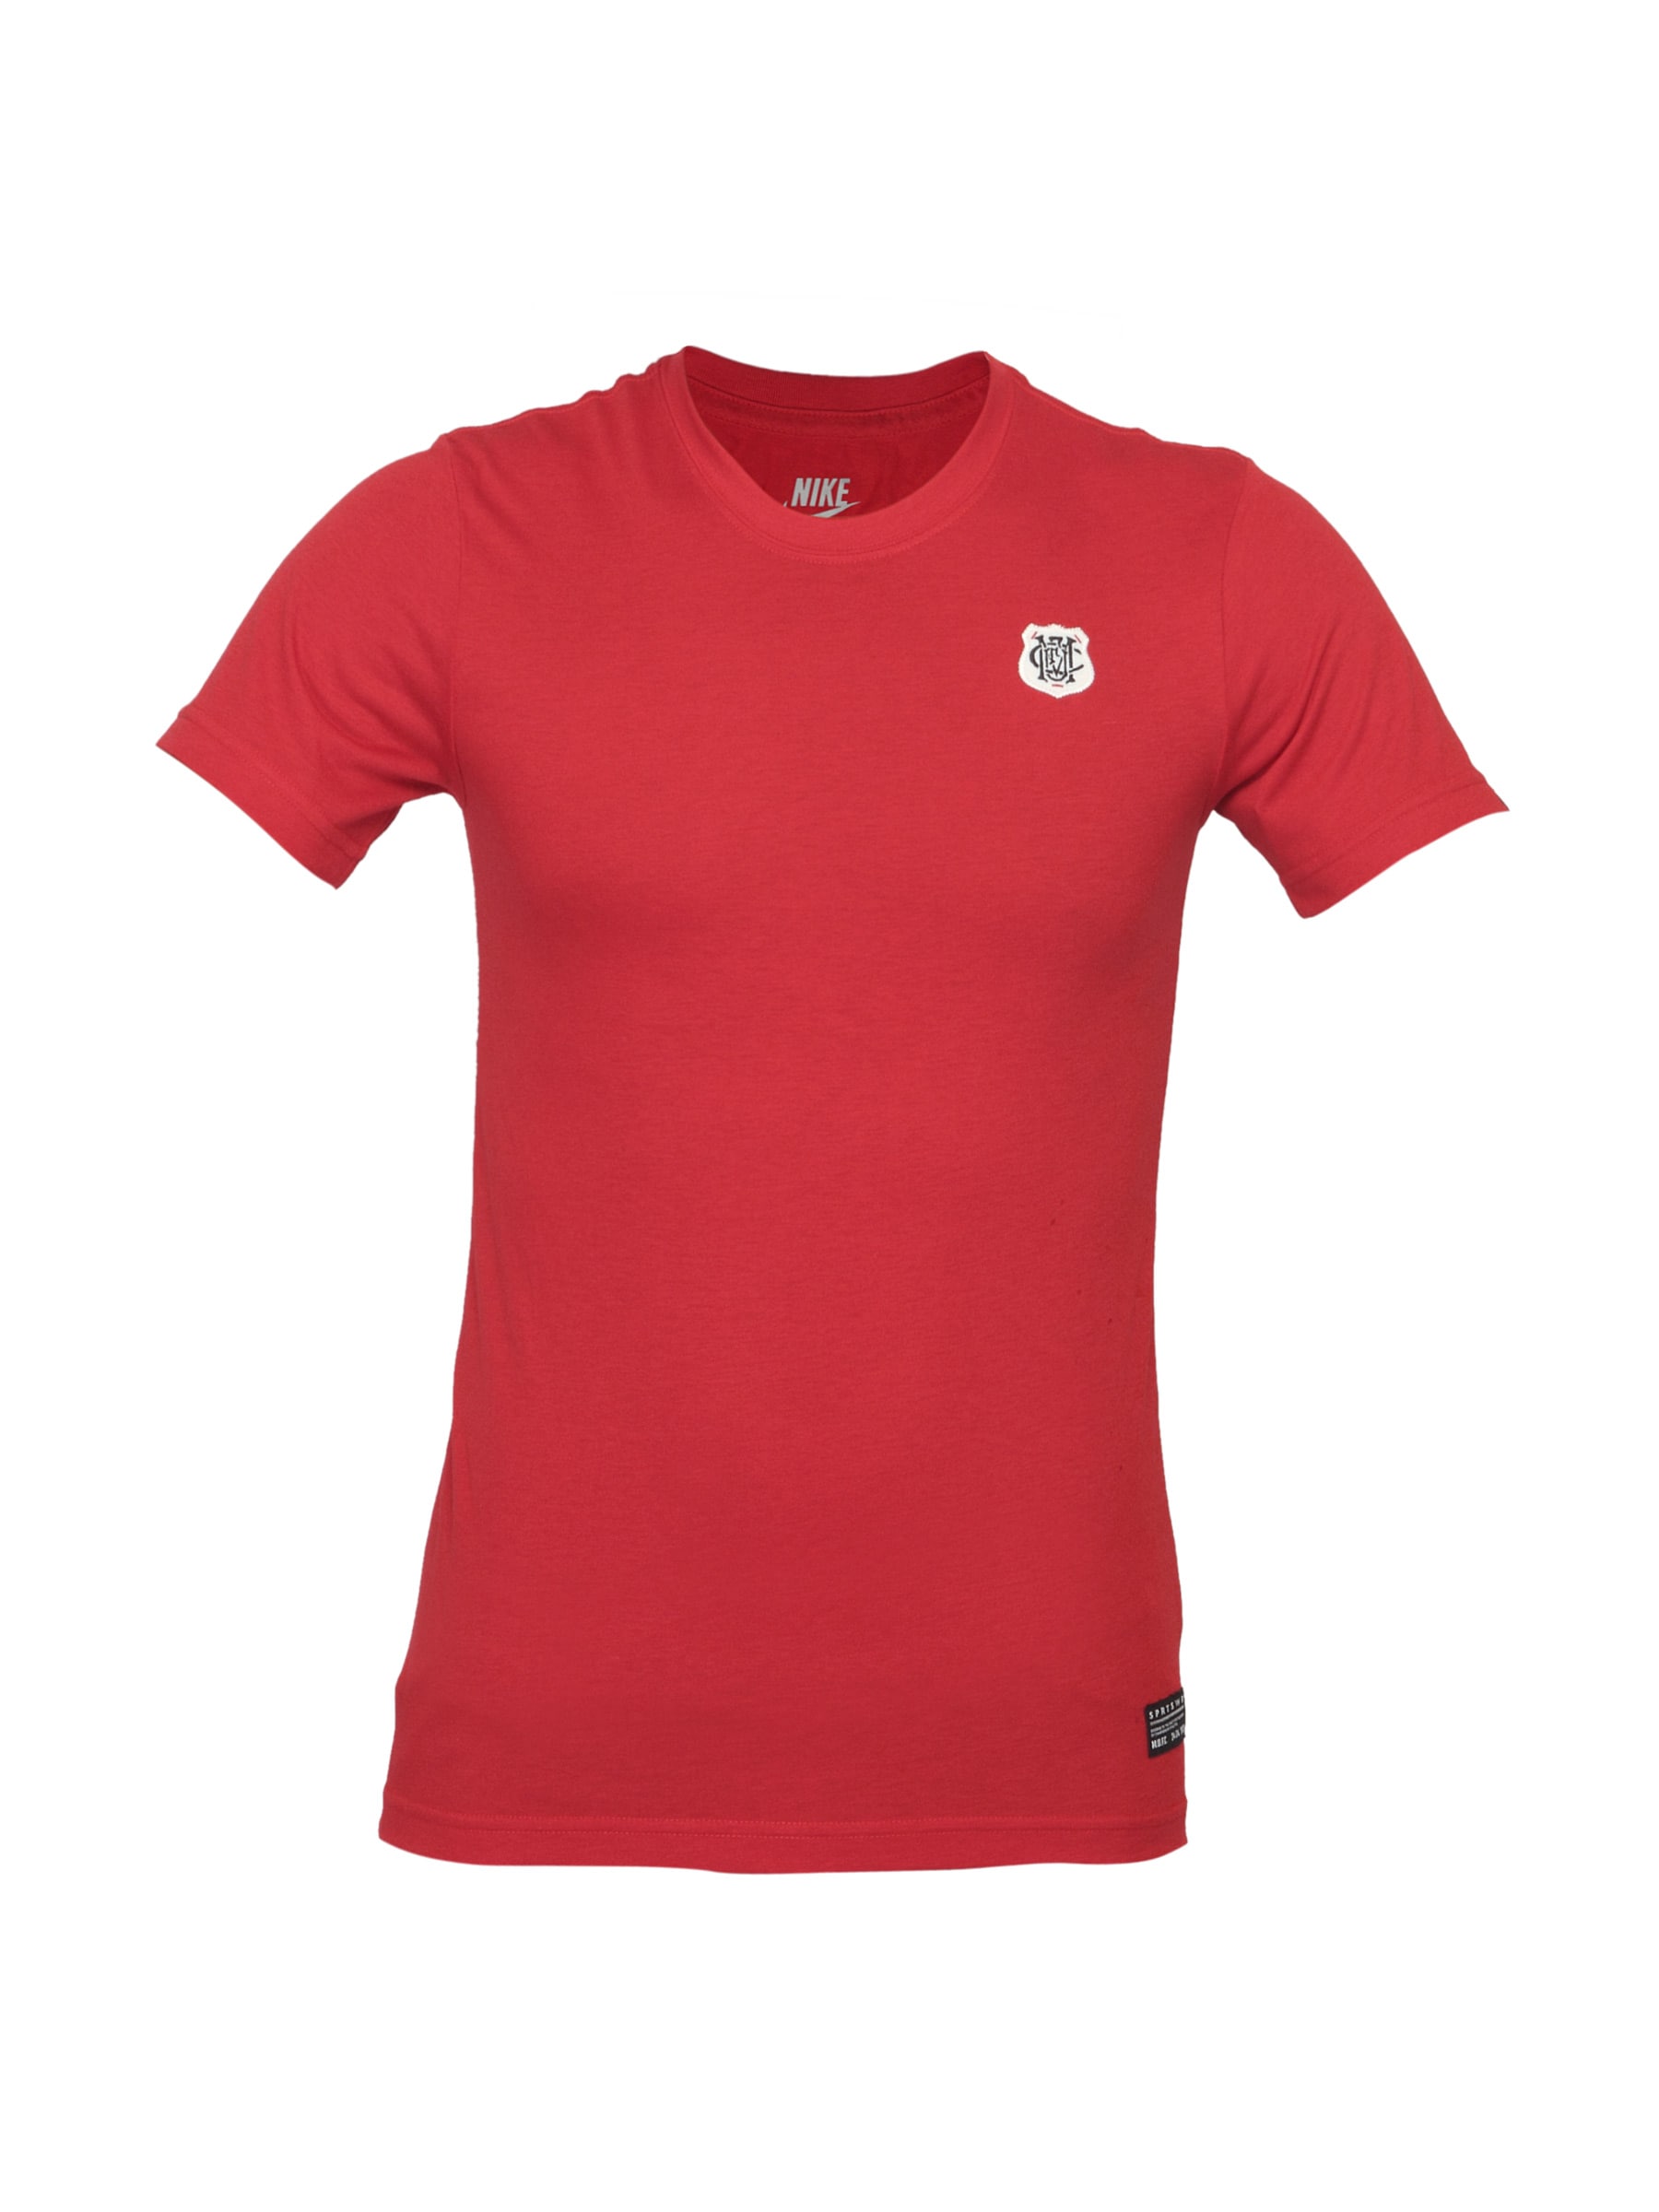 Nike Men U Logo Red T-shirt